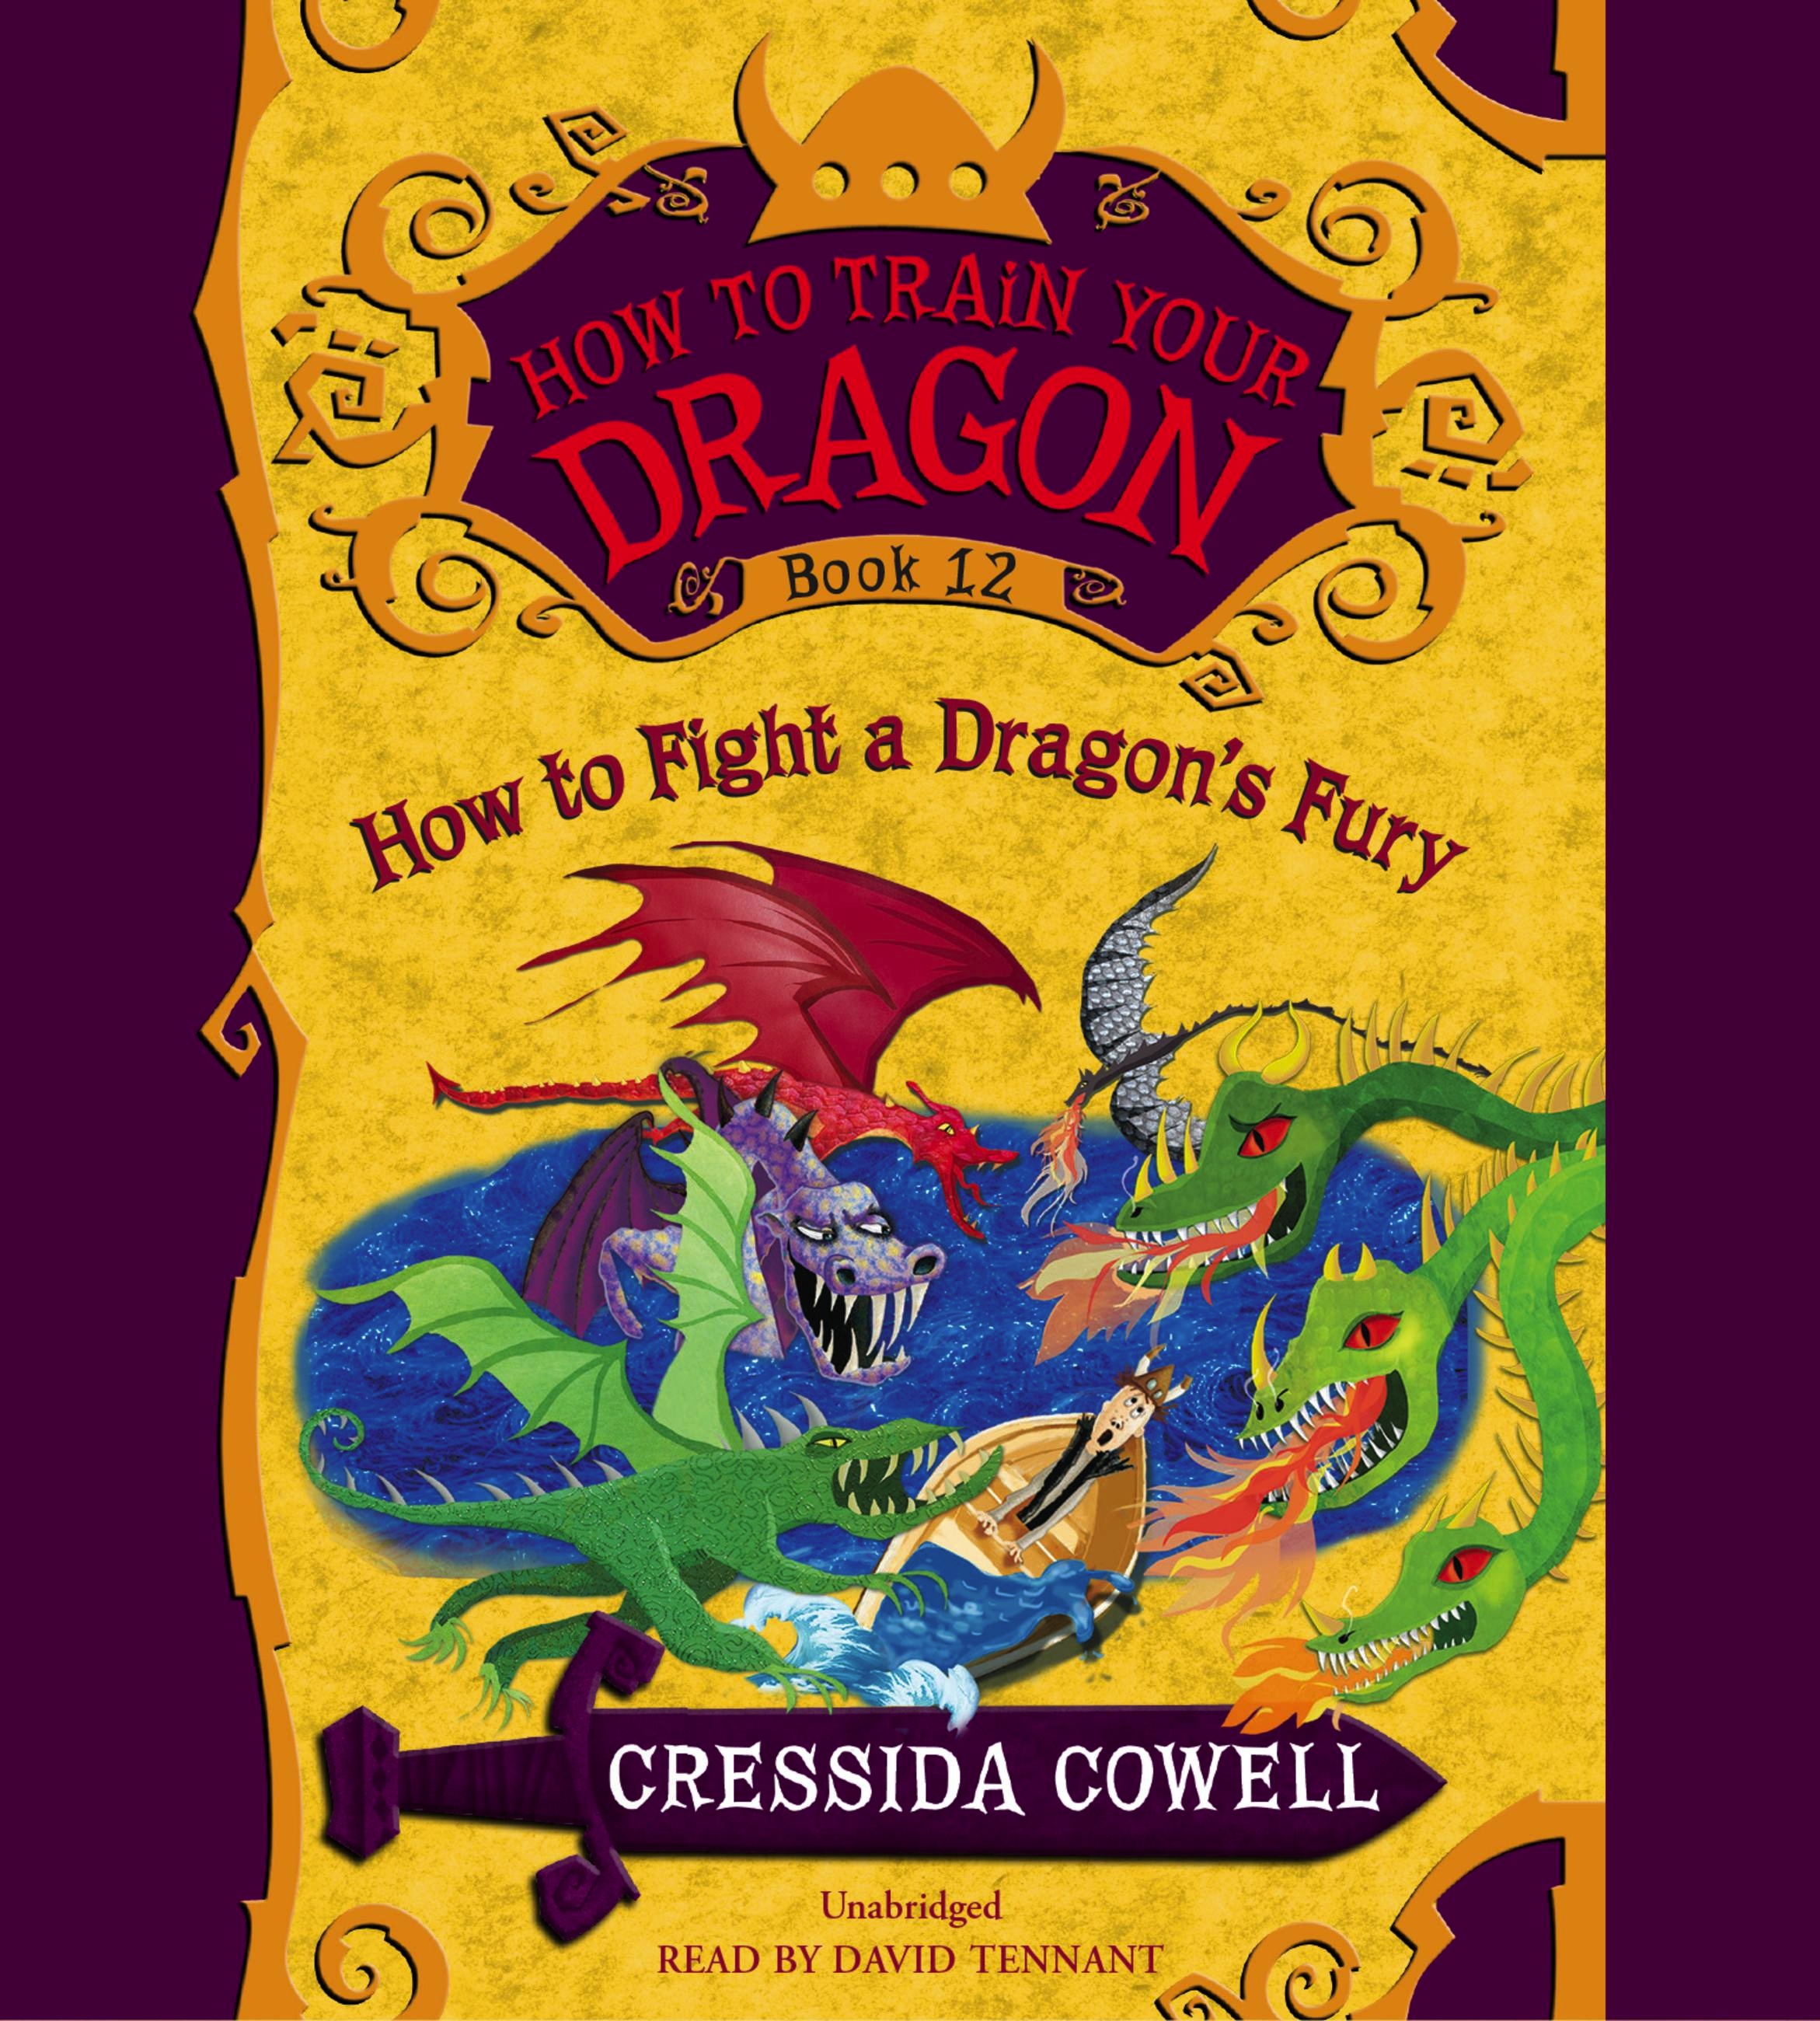 12 драконов книга. Книга how to Train your Dragon. Крессида Коуэлл. Крессида Коуэлл книги. Крессида Коуэлл драконы.